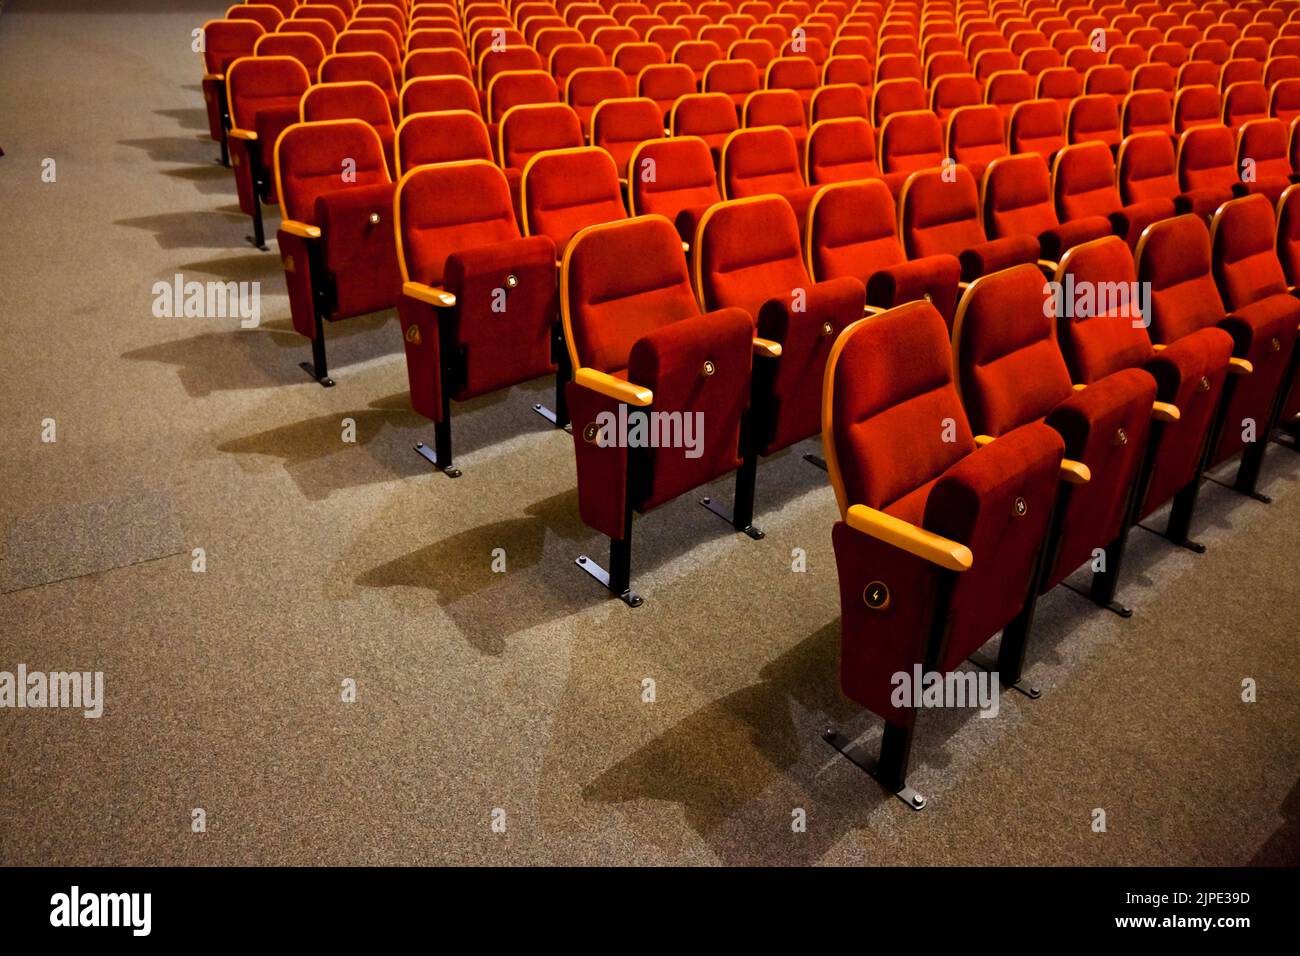 théâtre, numéroté, rangée de chaises, samtsitze, théâtres, théâtre, théâtres, numéros, rangées de chaises Banque D'Images